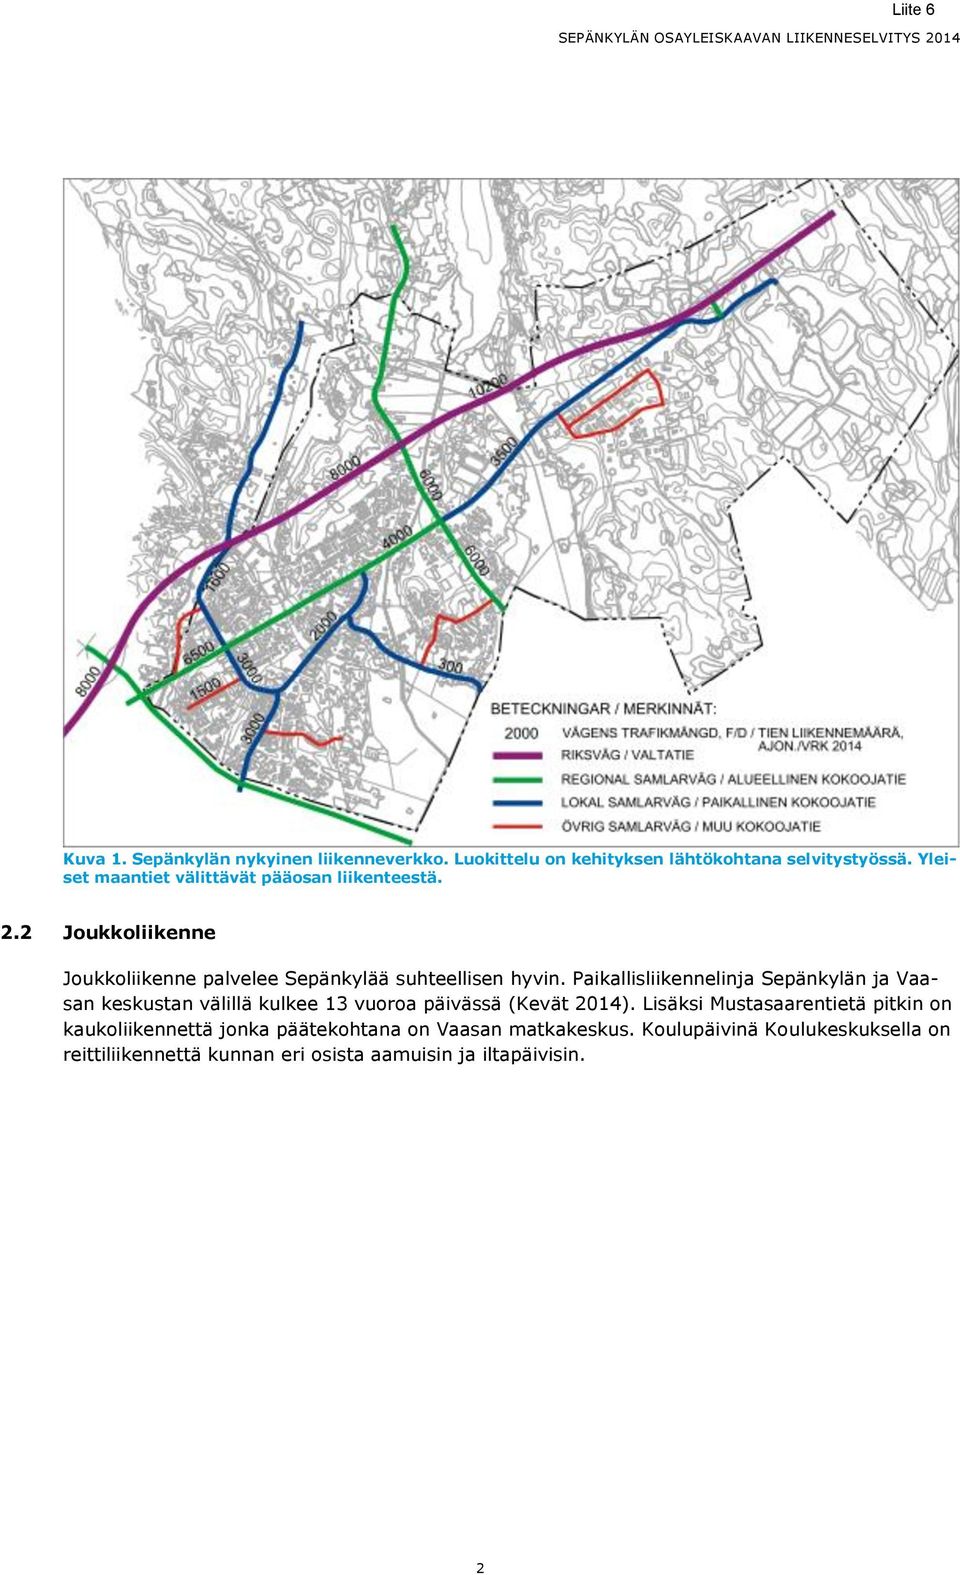 Paikallisliikennelinja Sepänkylän ja Vaasan keskustan välillä kulkee 13 vuoroa päivässä (Kevät 2014).